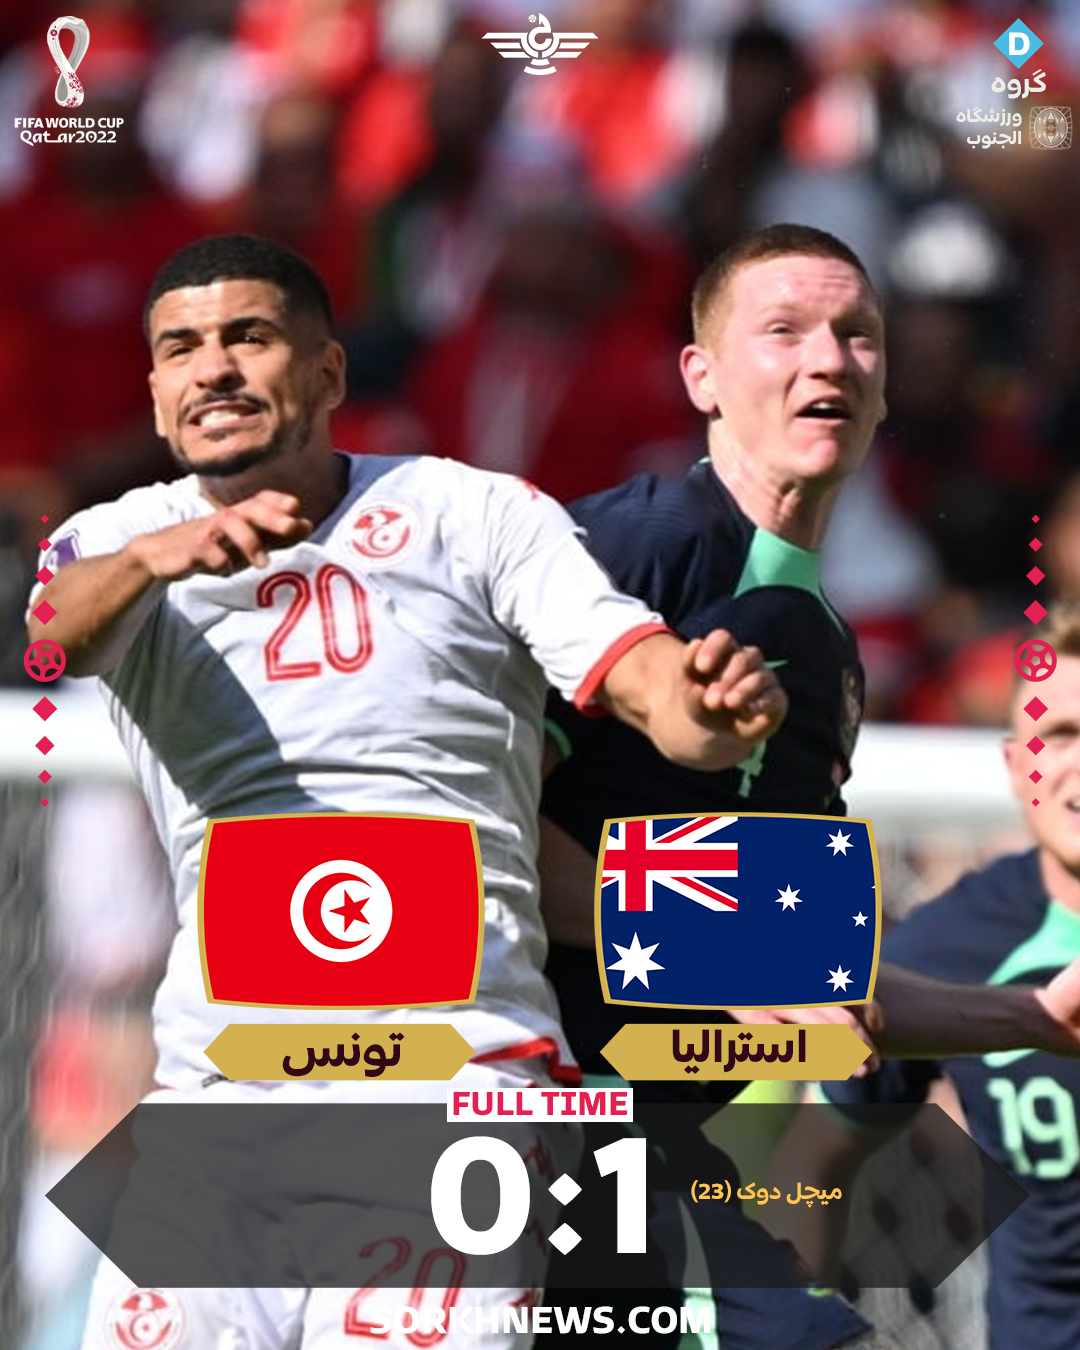  بازی استرالیا تونس